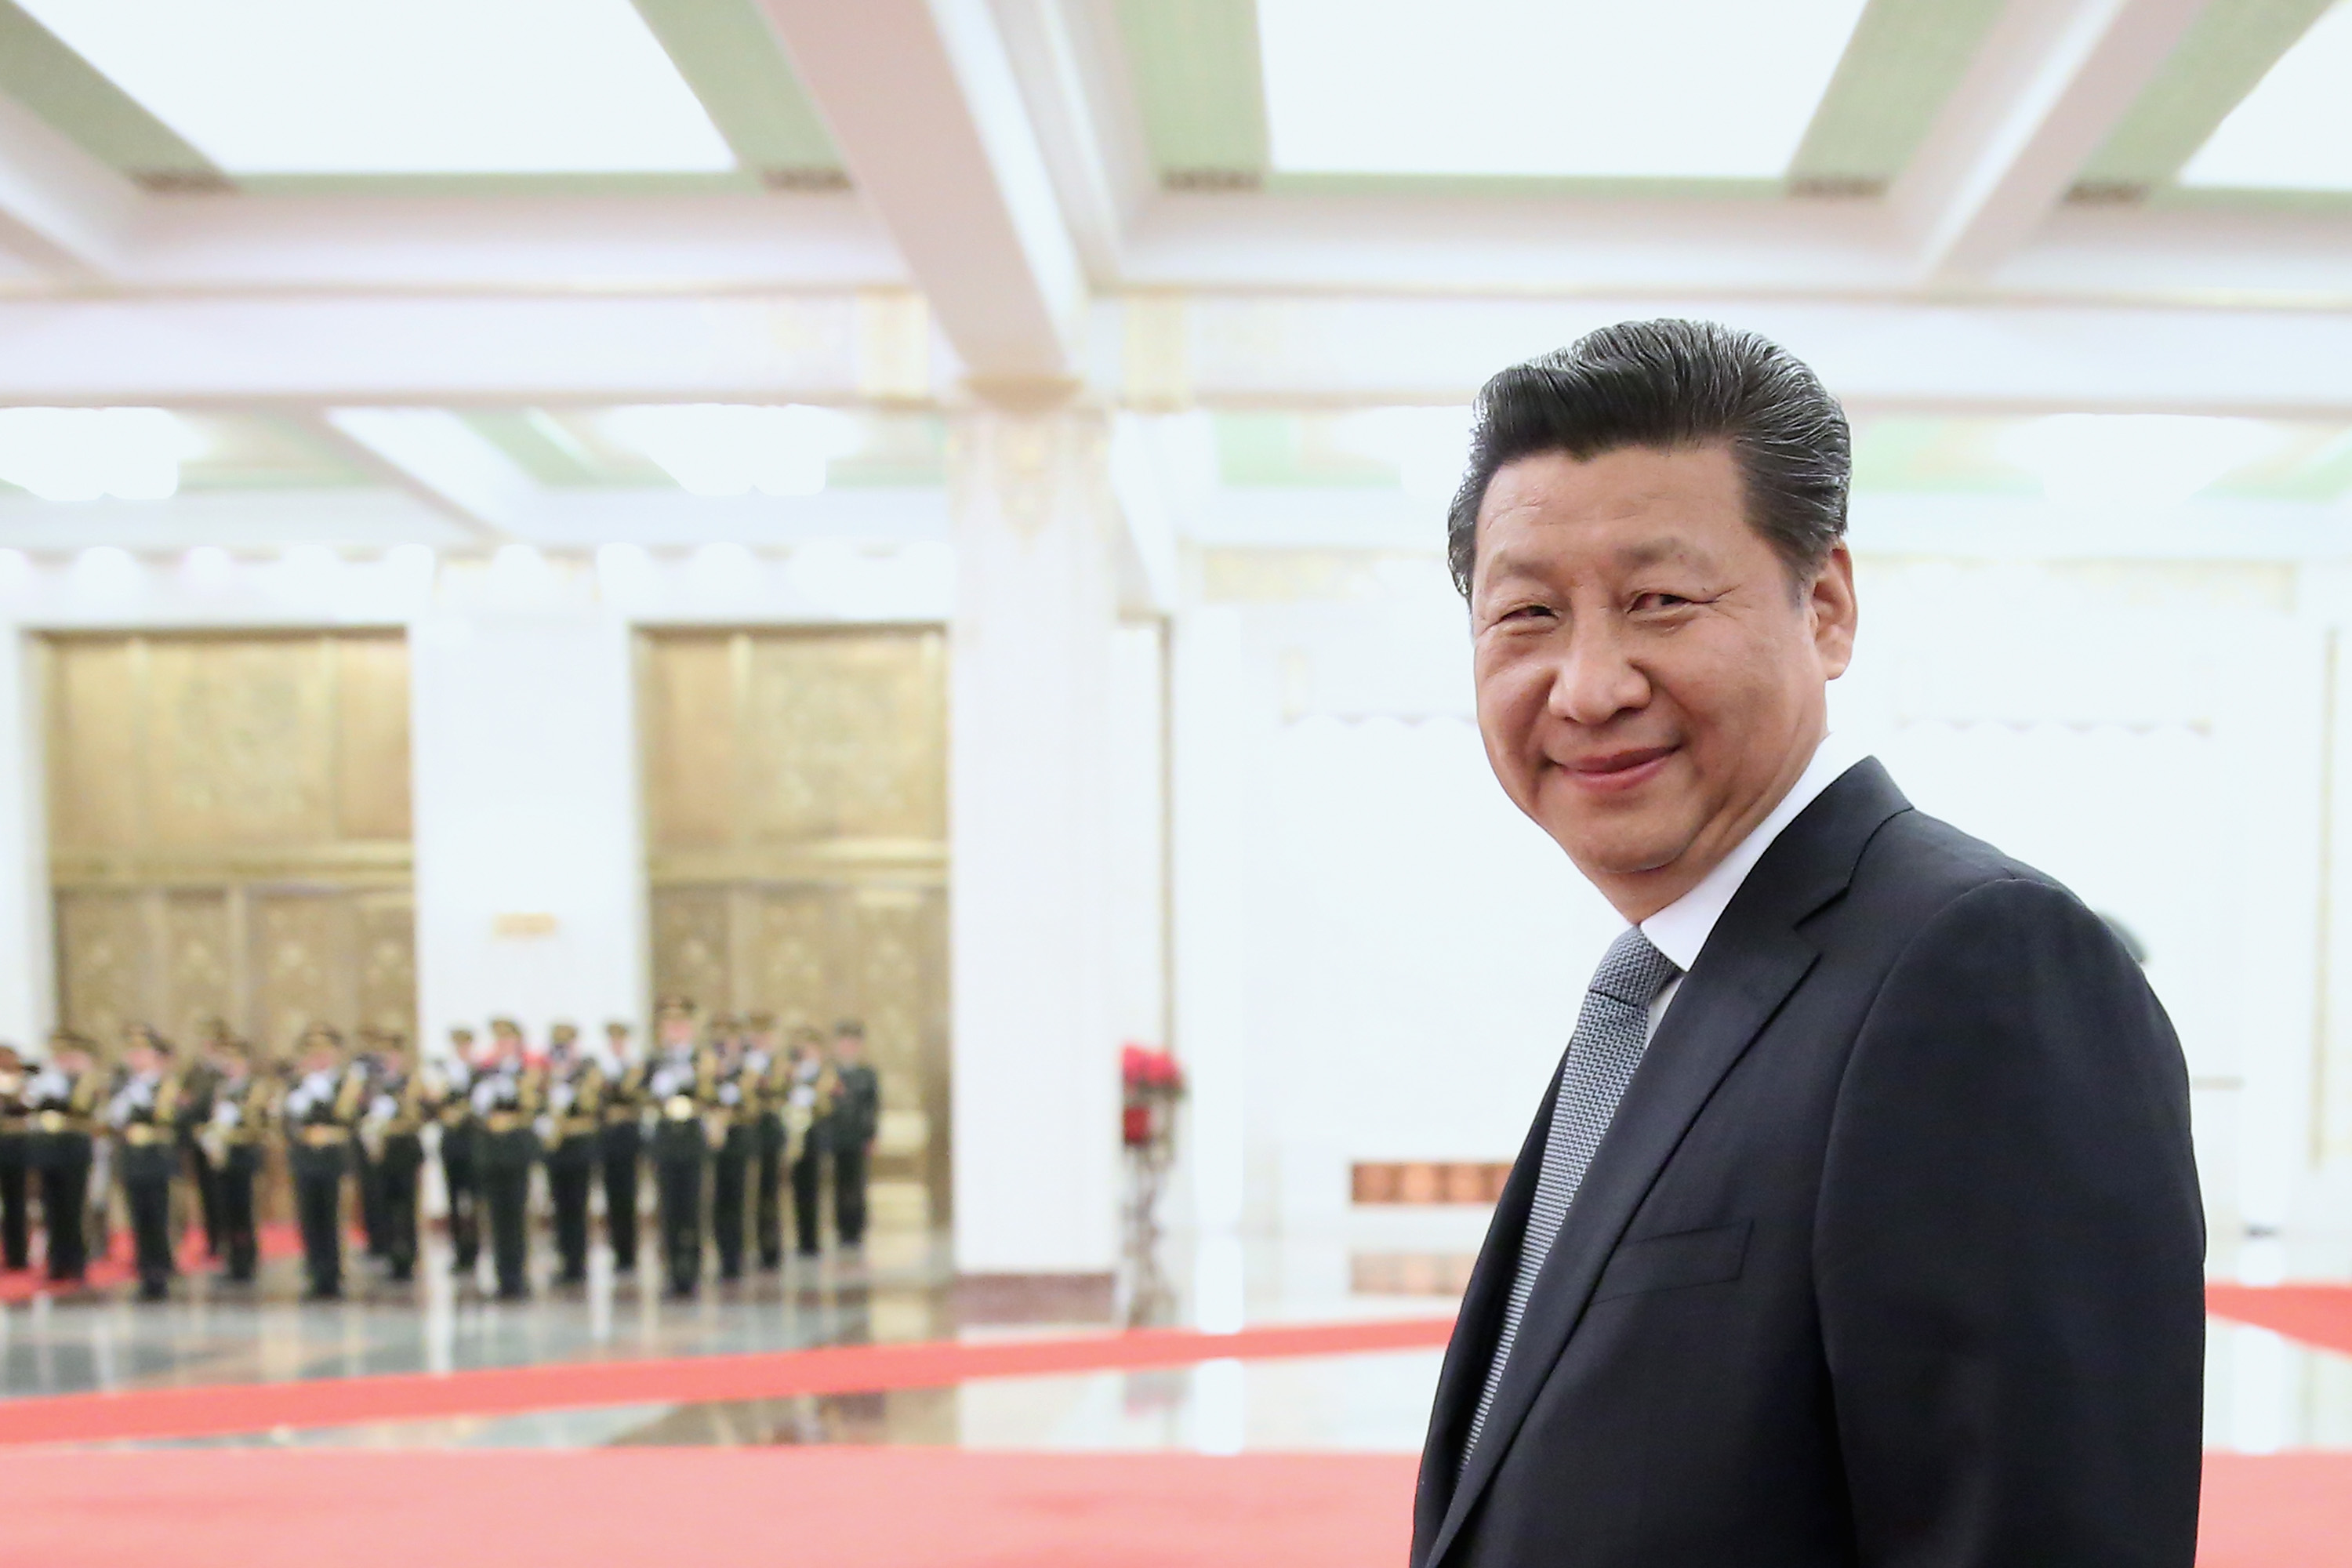 Staatschef Xi Jinping jetzt „Führungs-Ikone“ der KP – Warum dies Chinas Kapitalflucht anheizt